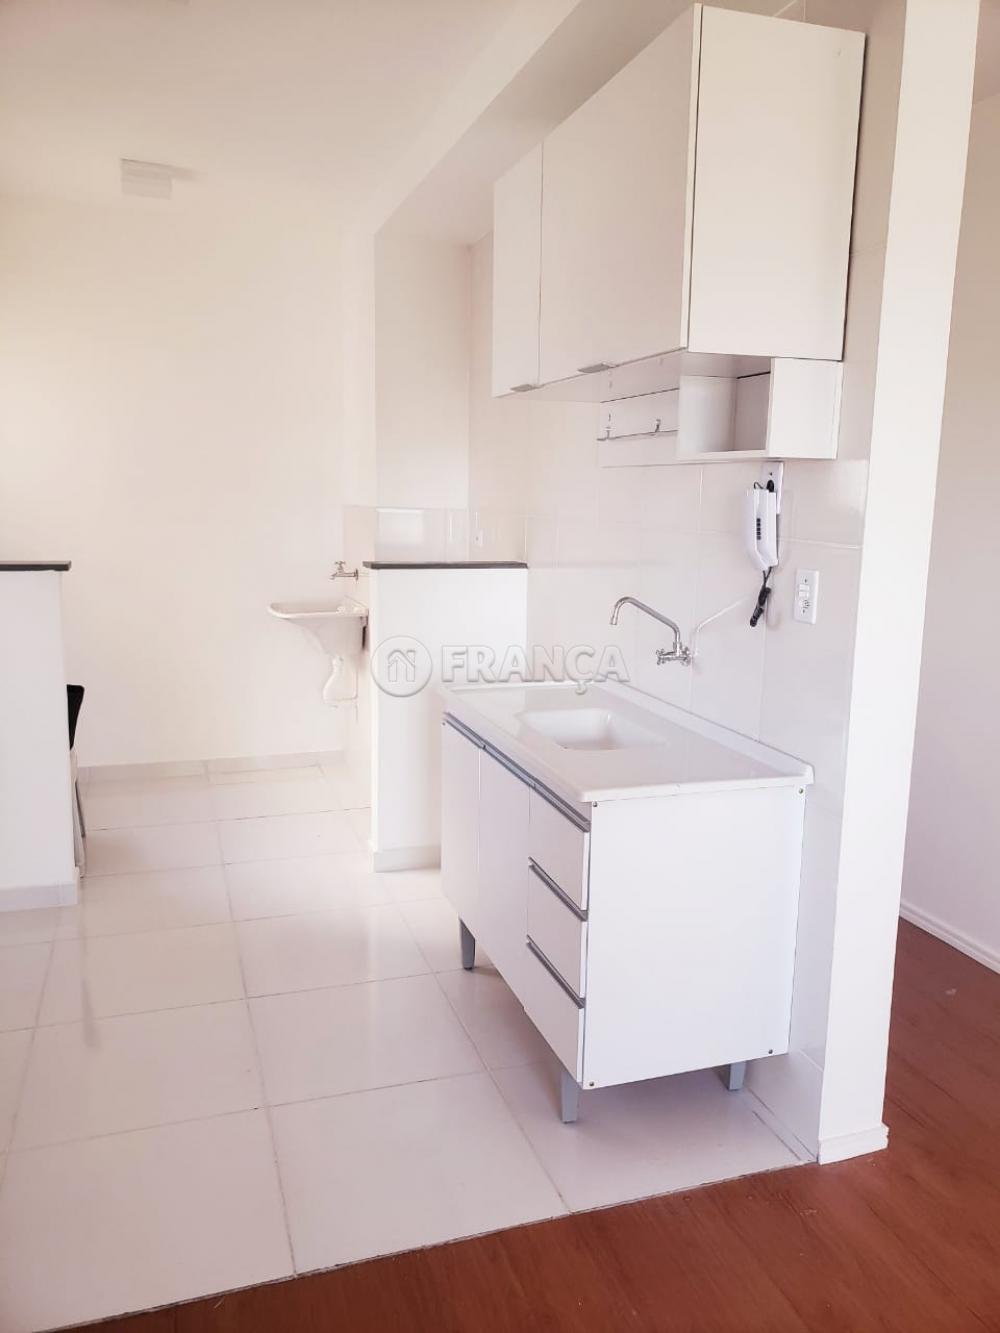 Alugar Apartamento / Padrão em Jacareí R$ 750,00 - Foto 3